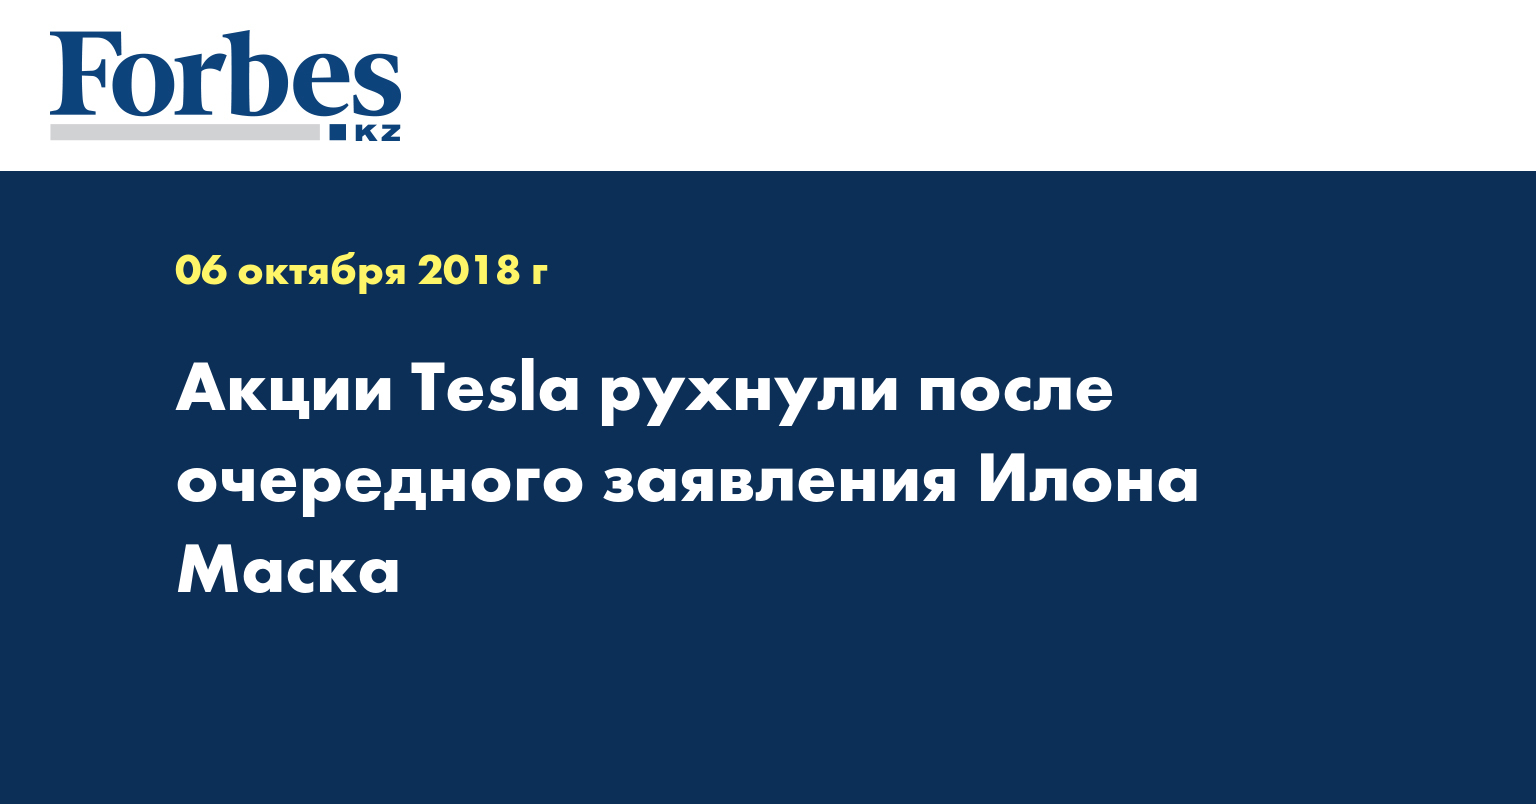 Акции Tesla рухнули после очередного заявления Илона Маска